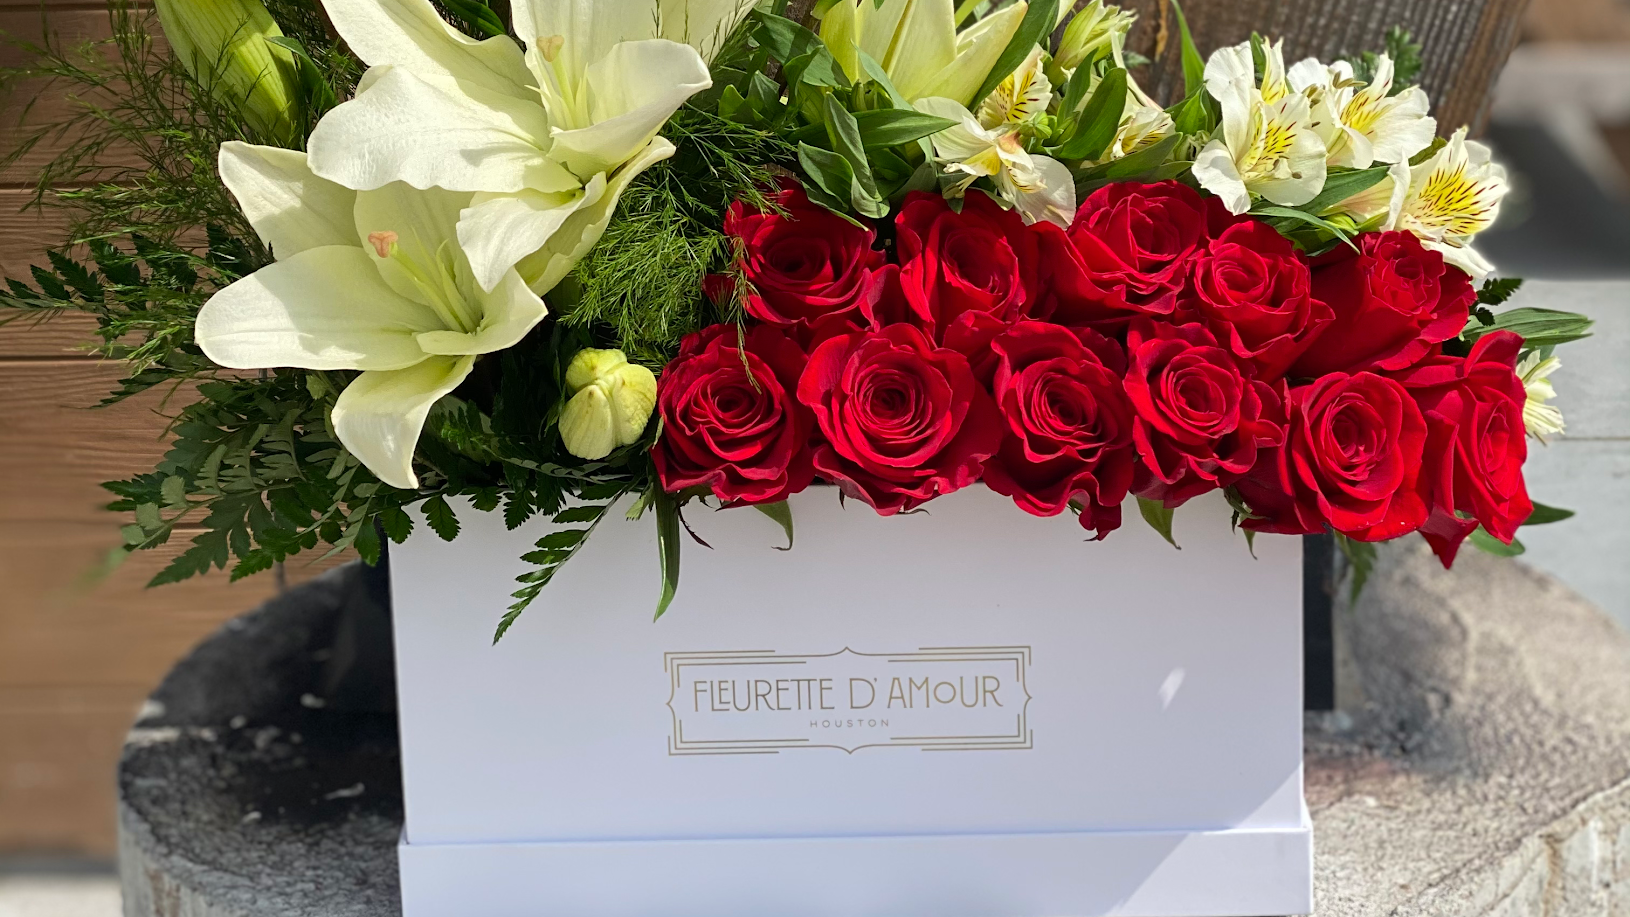 Flowers Fleurette D’amour - Flowers arrangements for all occasions